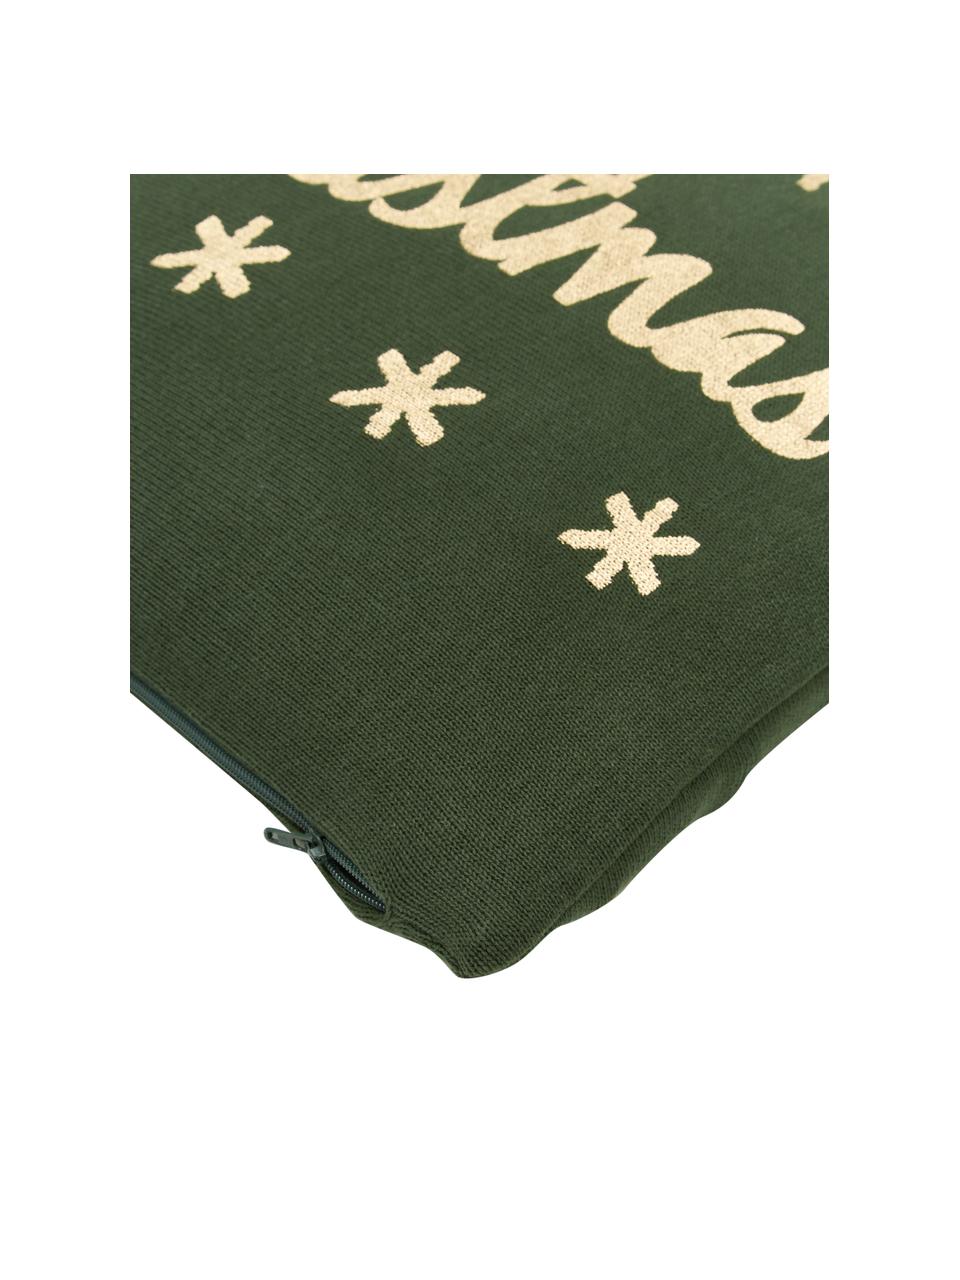 Poszewka na poduszkę z dzianiny Christmas, 100% bawełna, Zielony, odcienie złotego, S 40 x D 40 cm